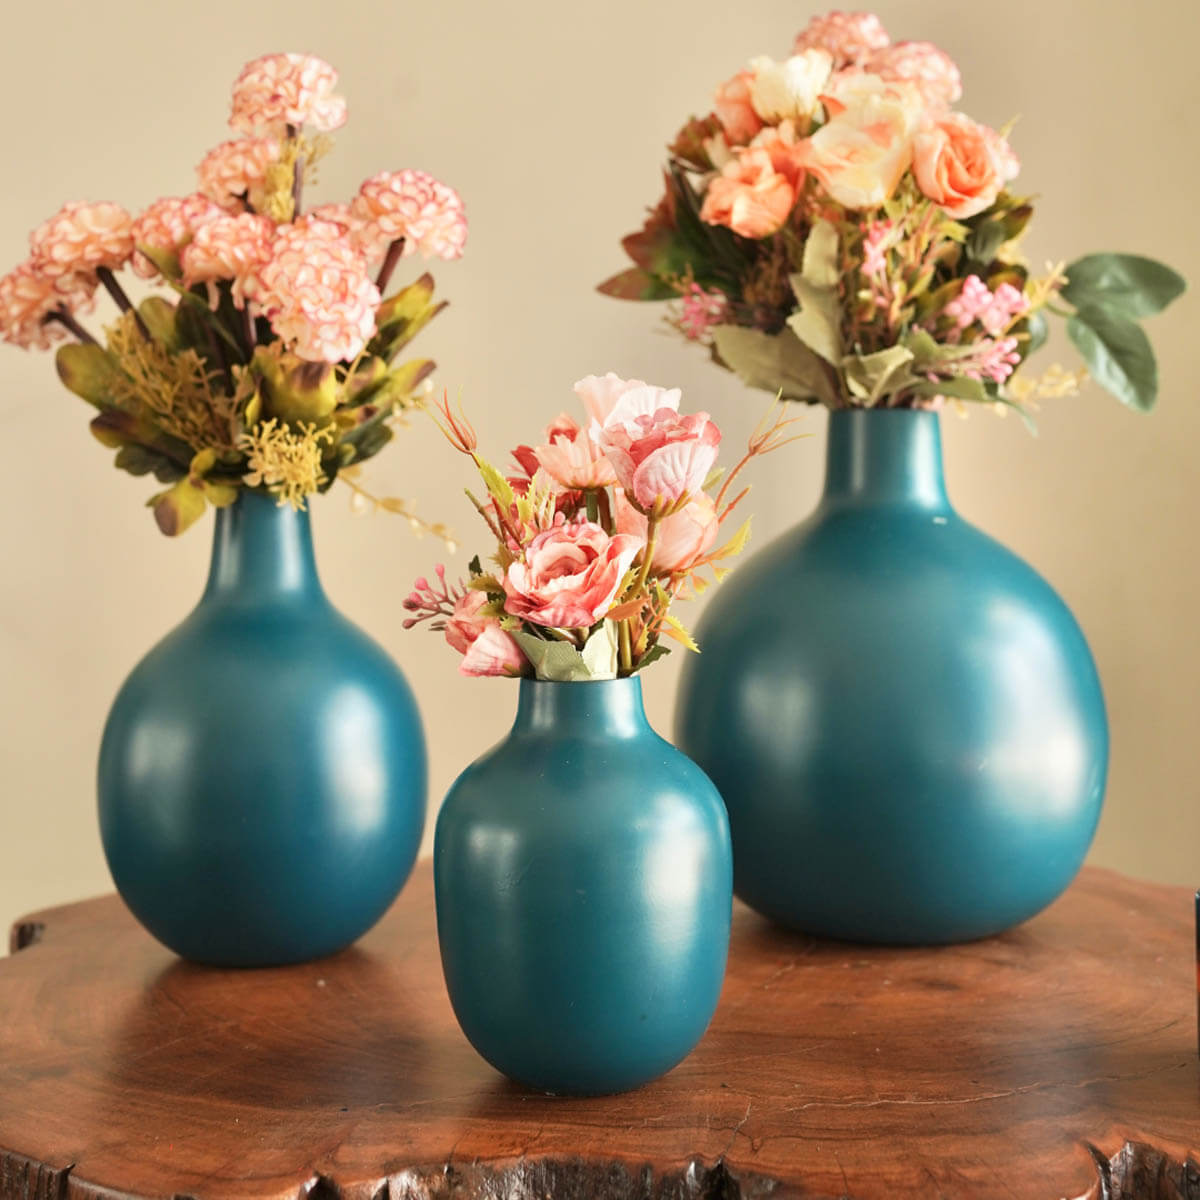 Opal Blue flower vase set of 3 